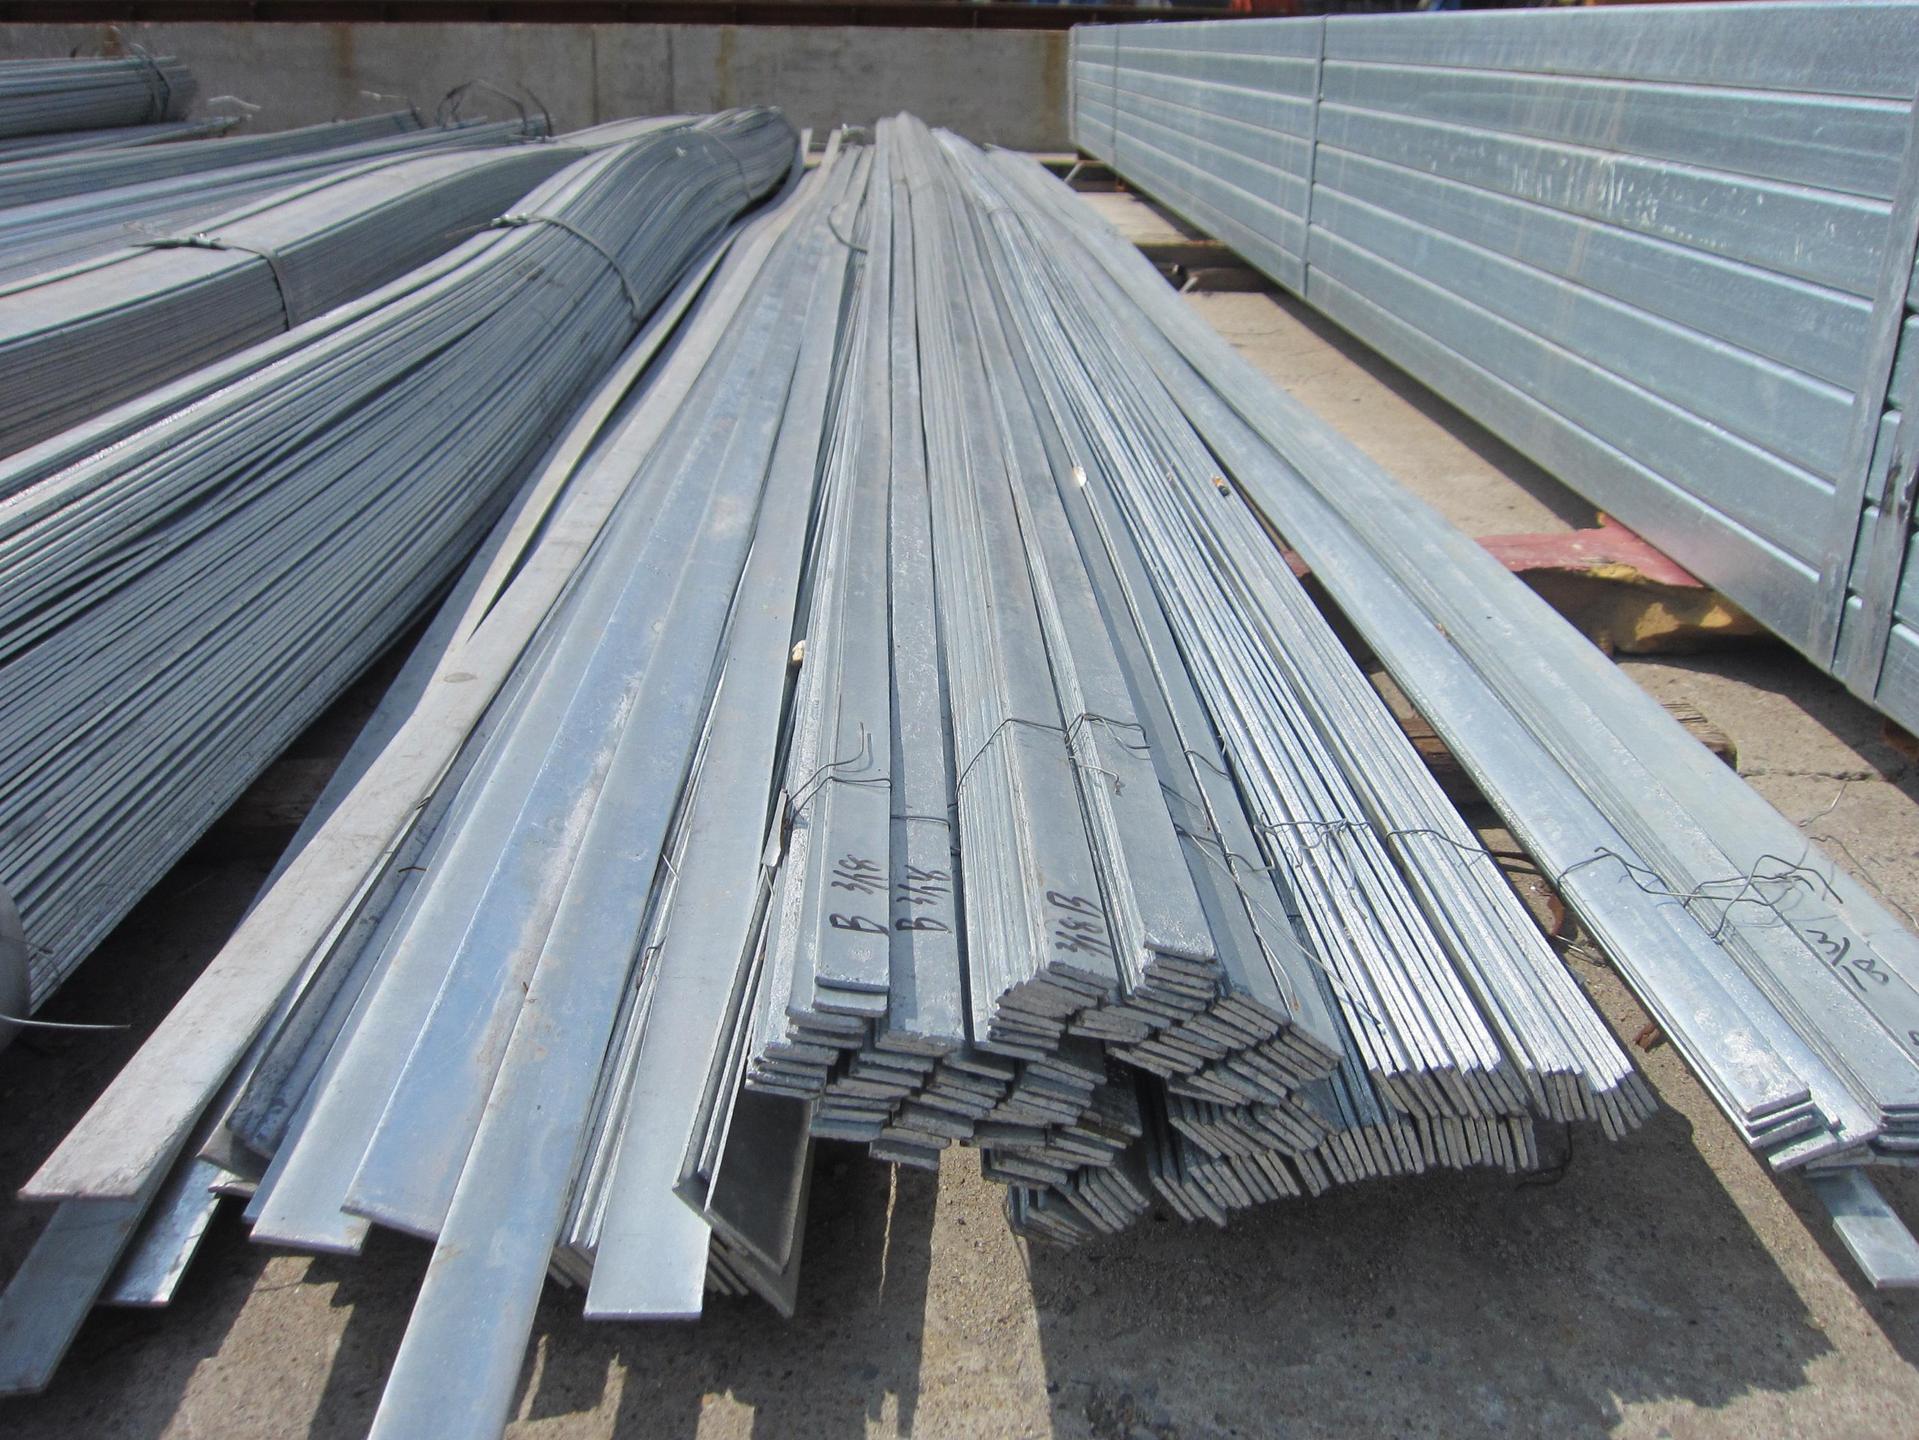 四川雅安金属制品生产厂家现有现货5000吨扁钢规格型号齐全质优价廉期待您的来电